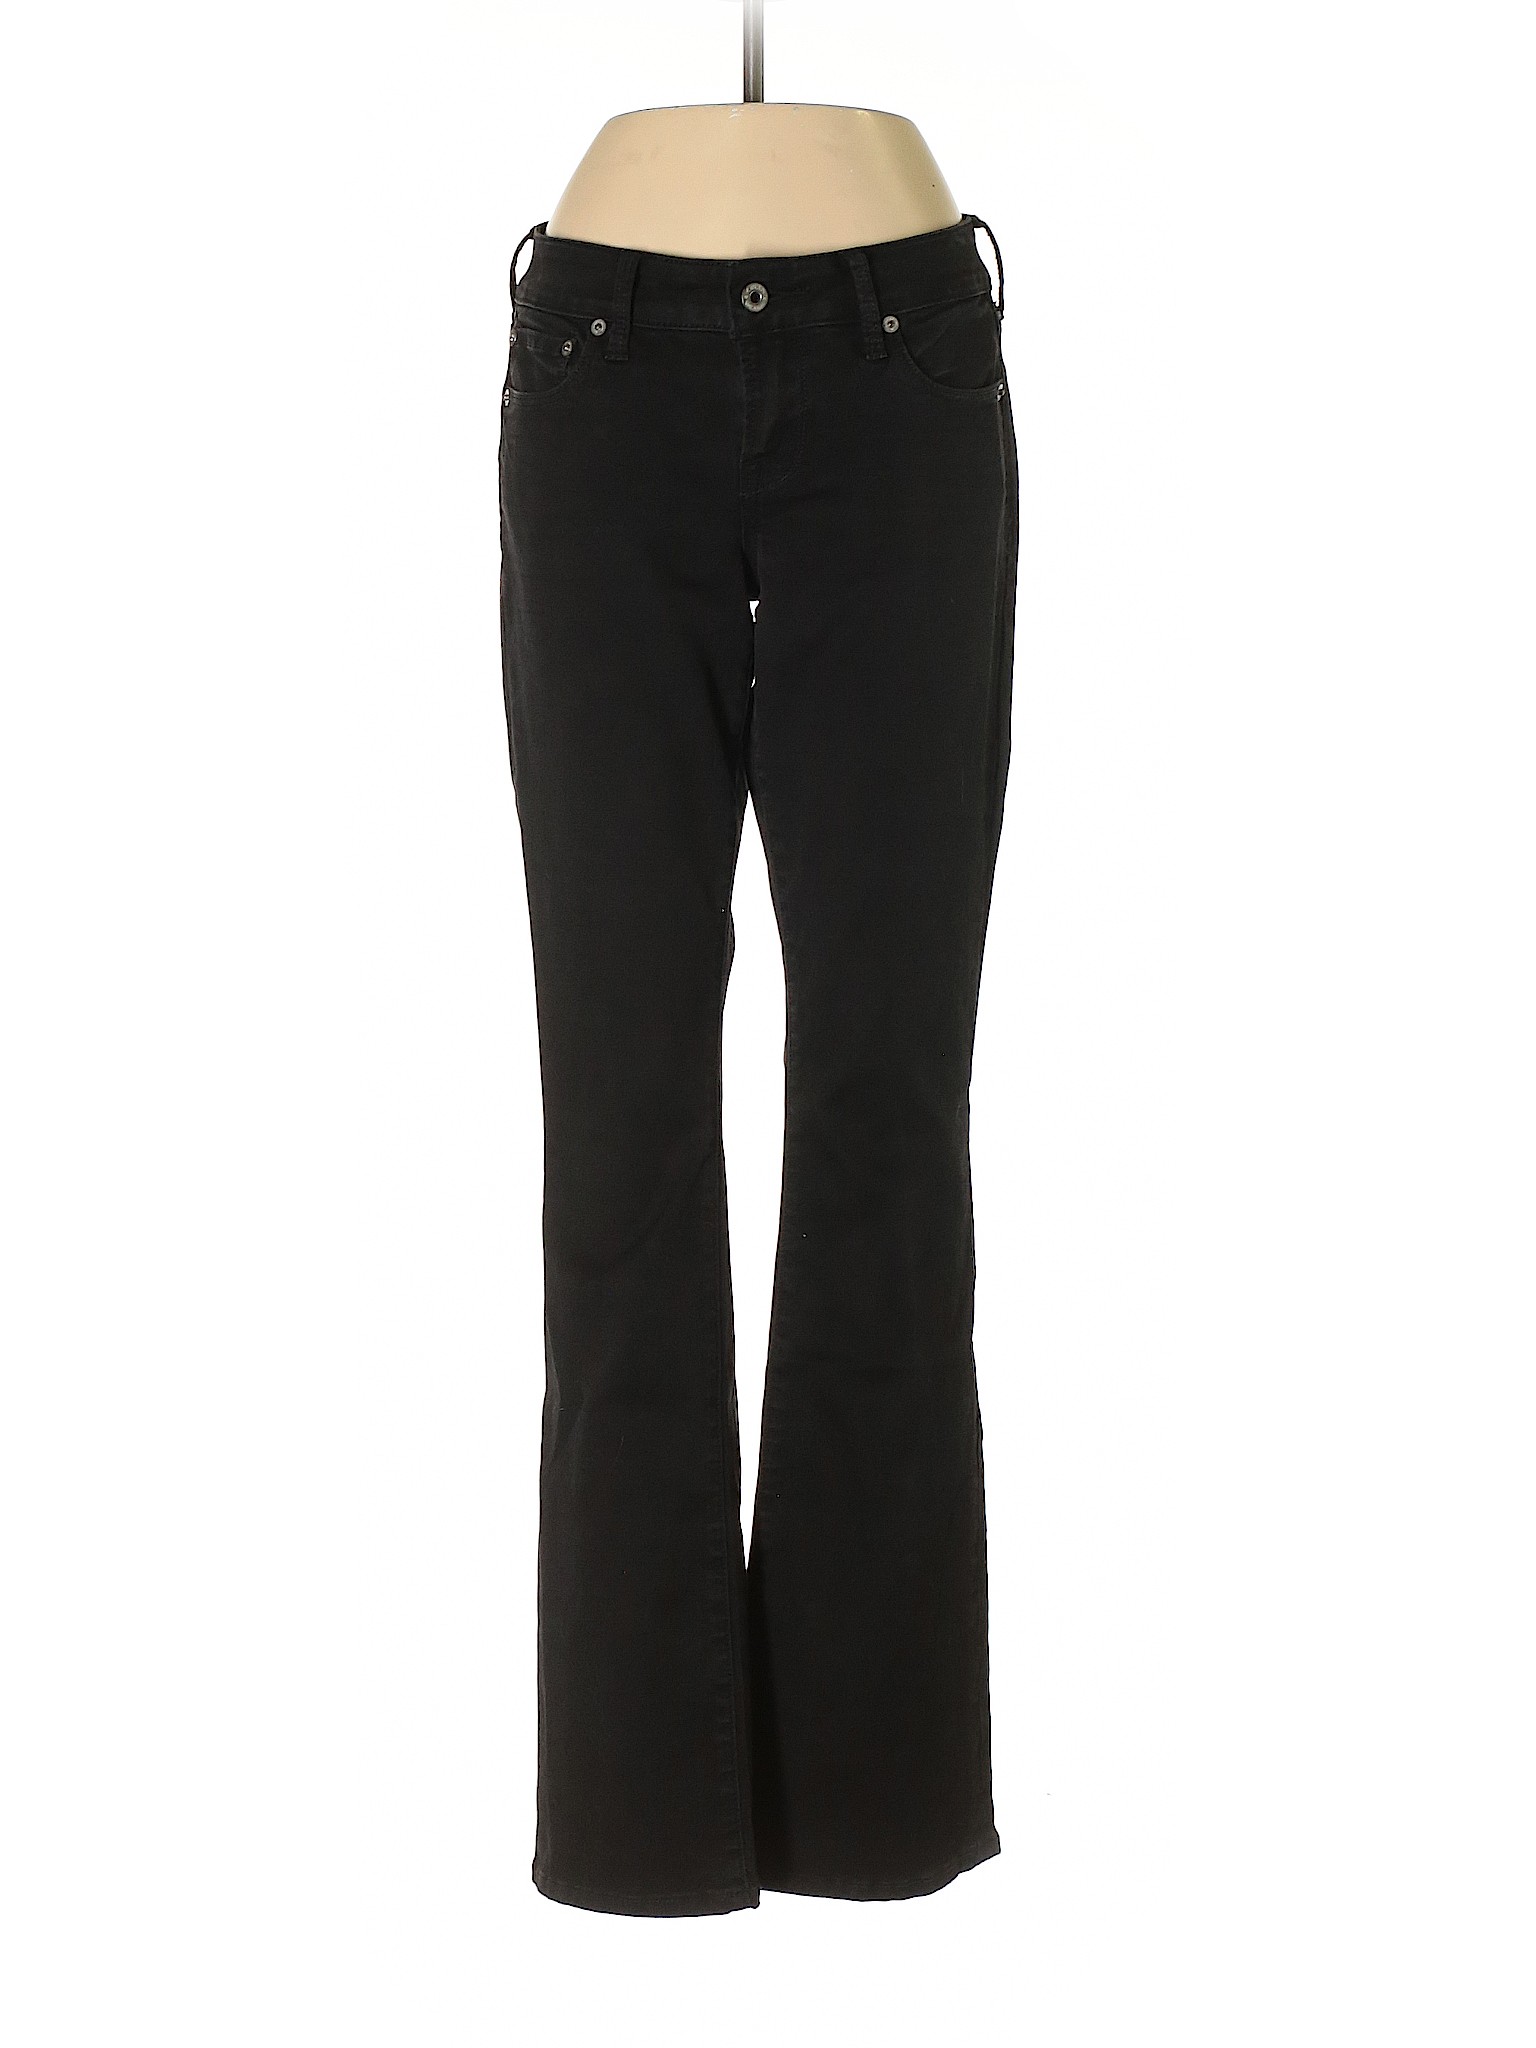 Lucky Brand Women Black Jeans 25W | eBay